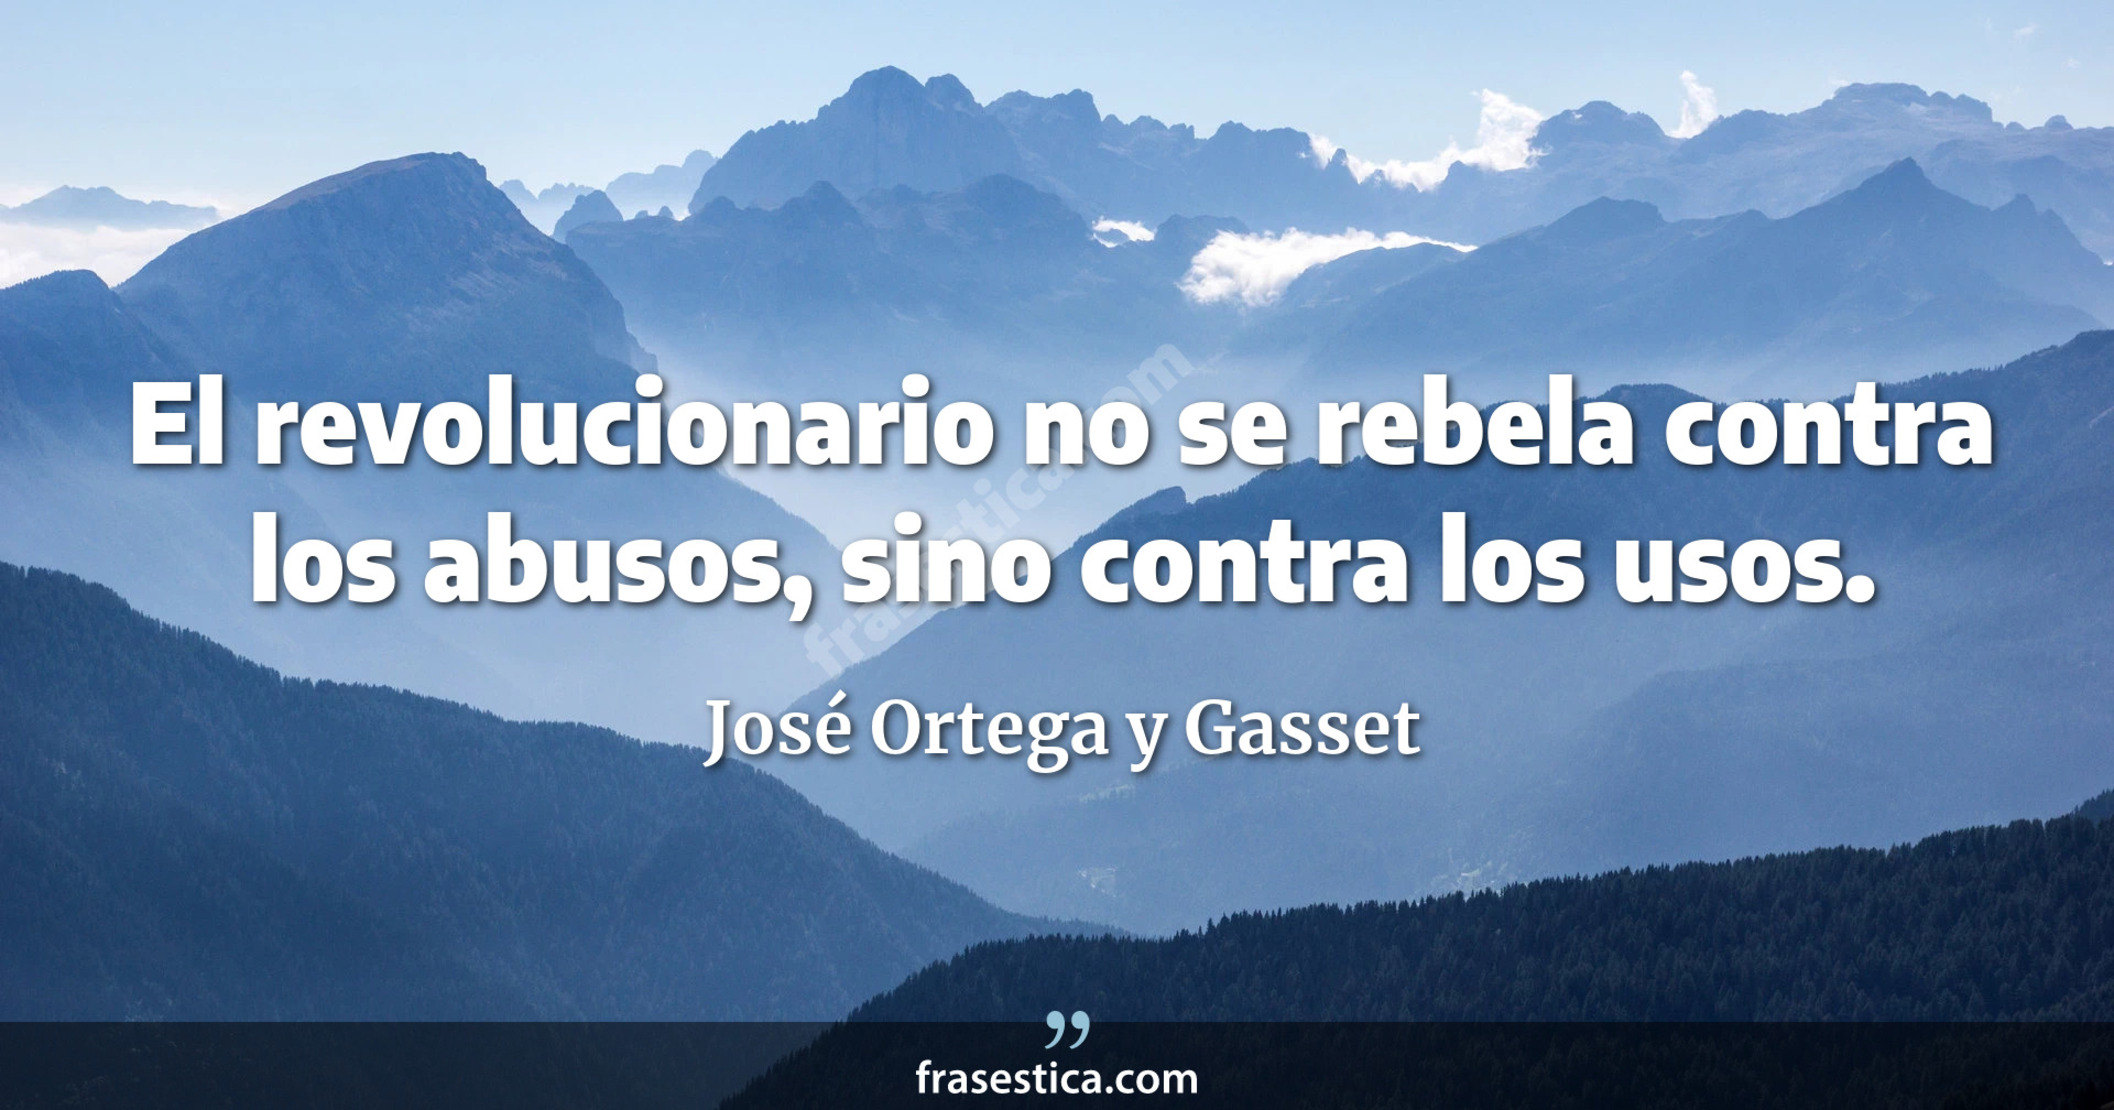 El revolucionario no se rebela contra los abusos, sino contra los usos. - José Ortega y Gasset